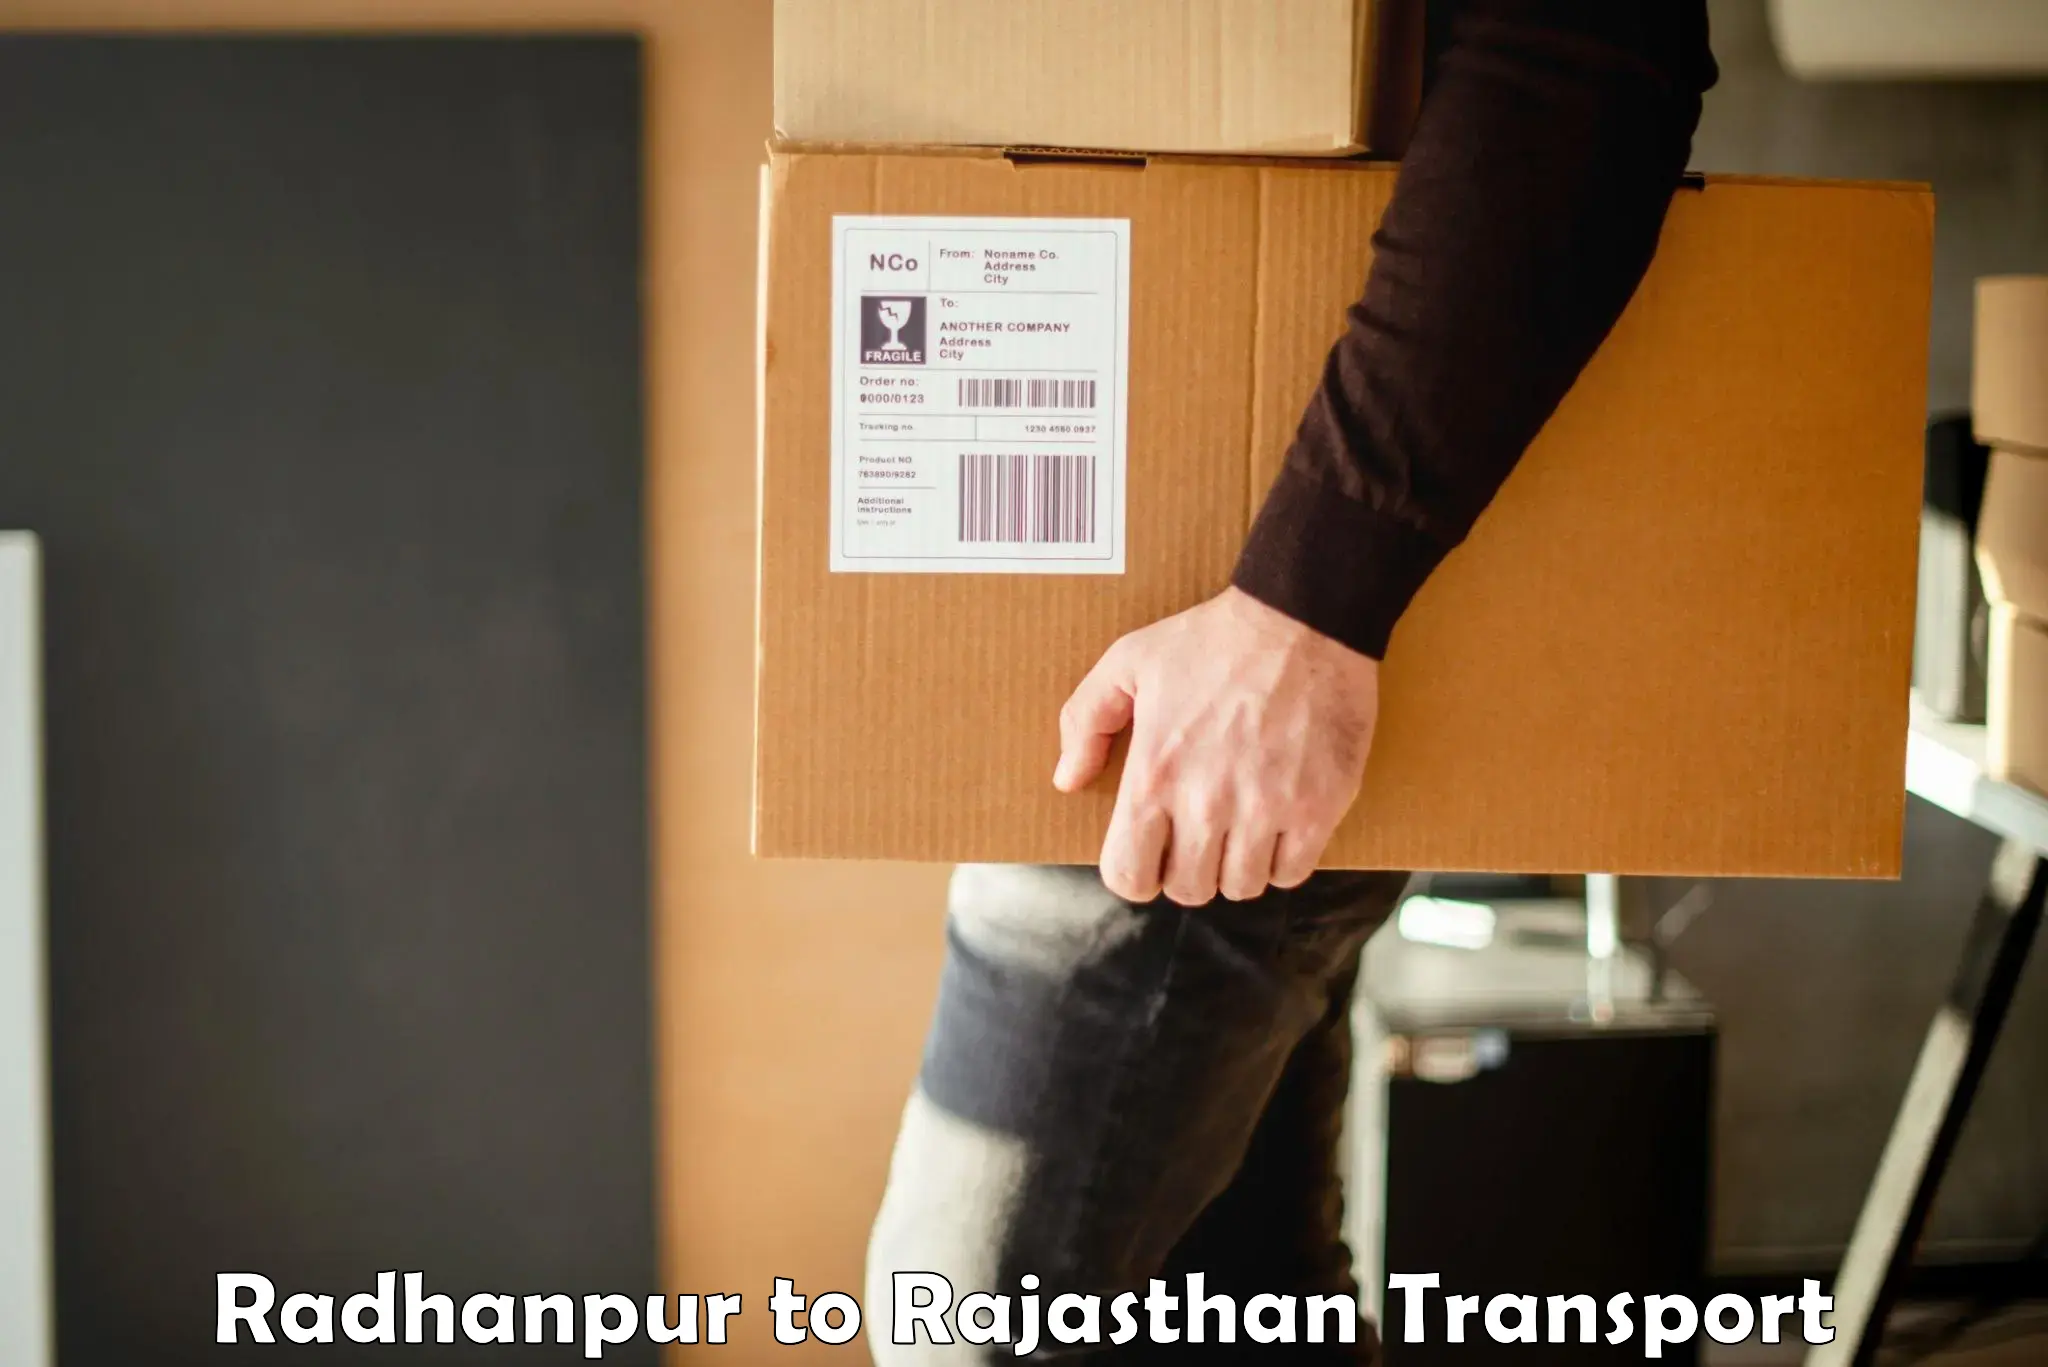 Transport shared services Radhanpur to Fatehnagar